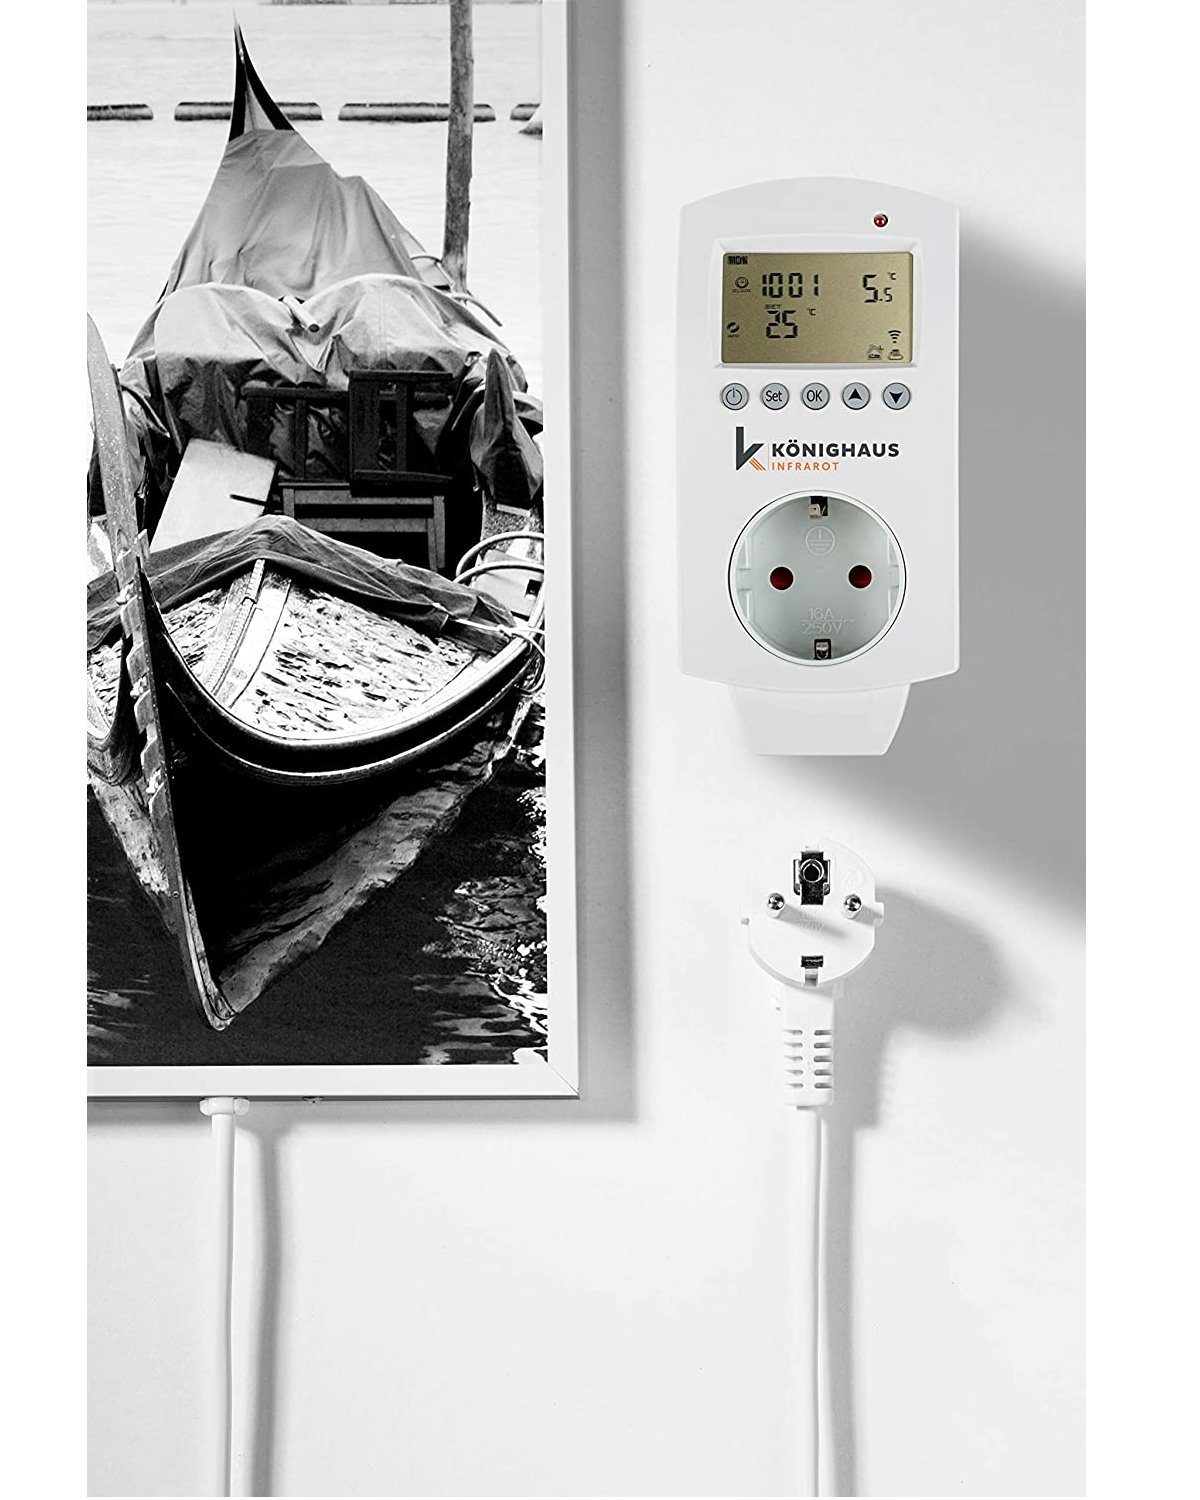 600W Infrarotheizung Home Bild-Serie Smart Smart, angenehme Venedig Aussicht Strahlungswärme, Germany, in Made Könighaus